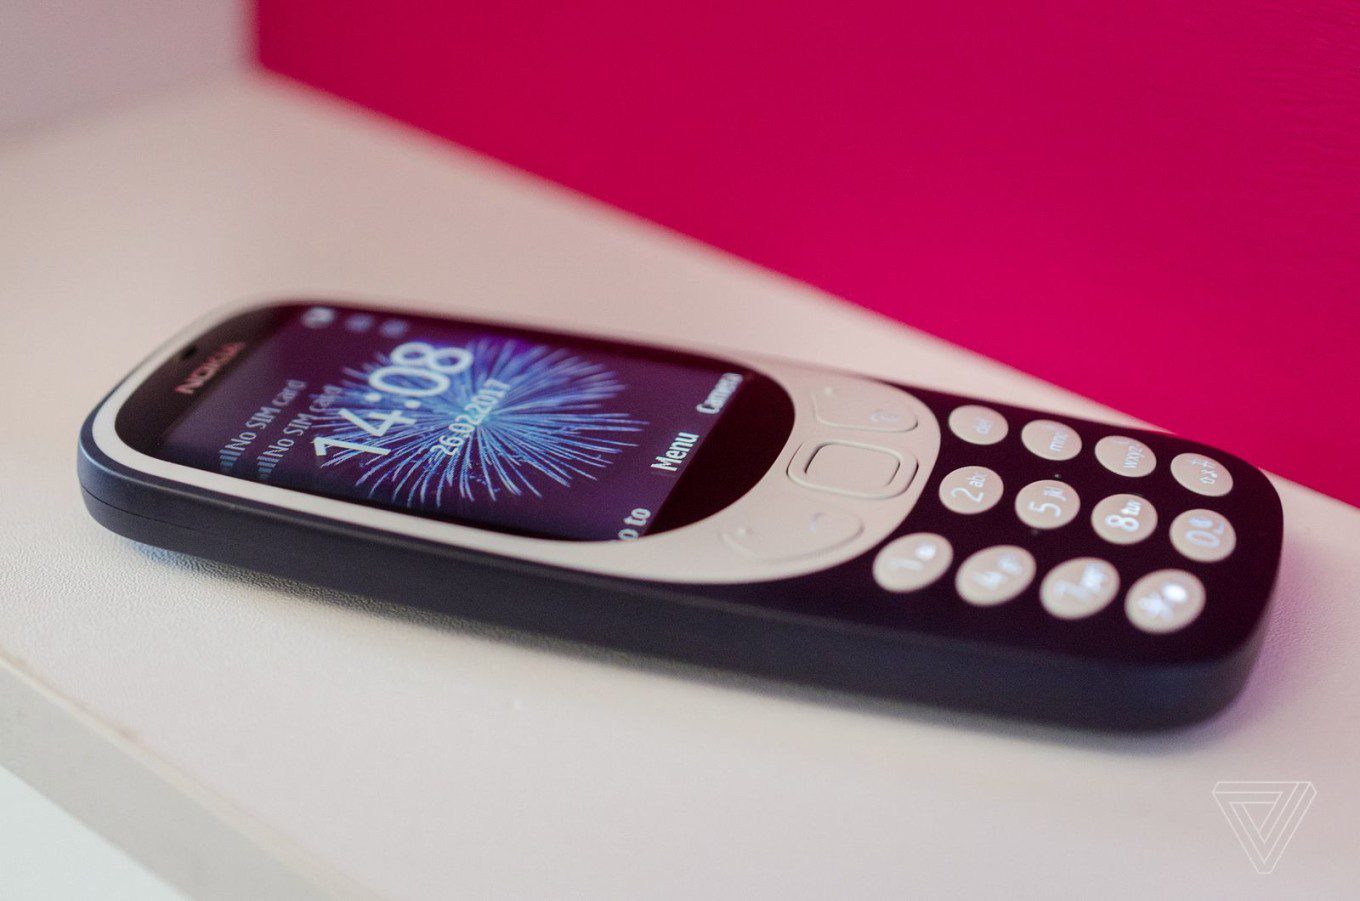 Nokia выпустила ретро-телефон 3310: получилась “классика” по цене в $52